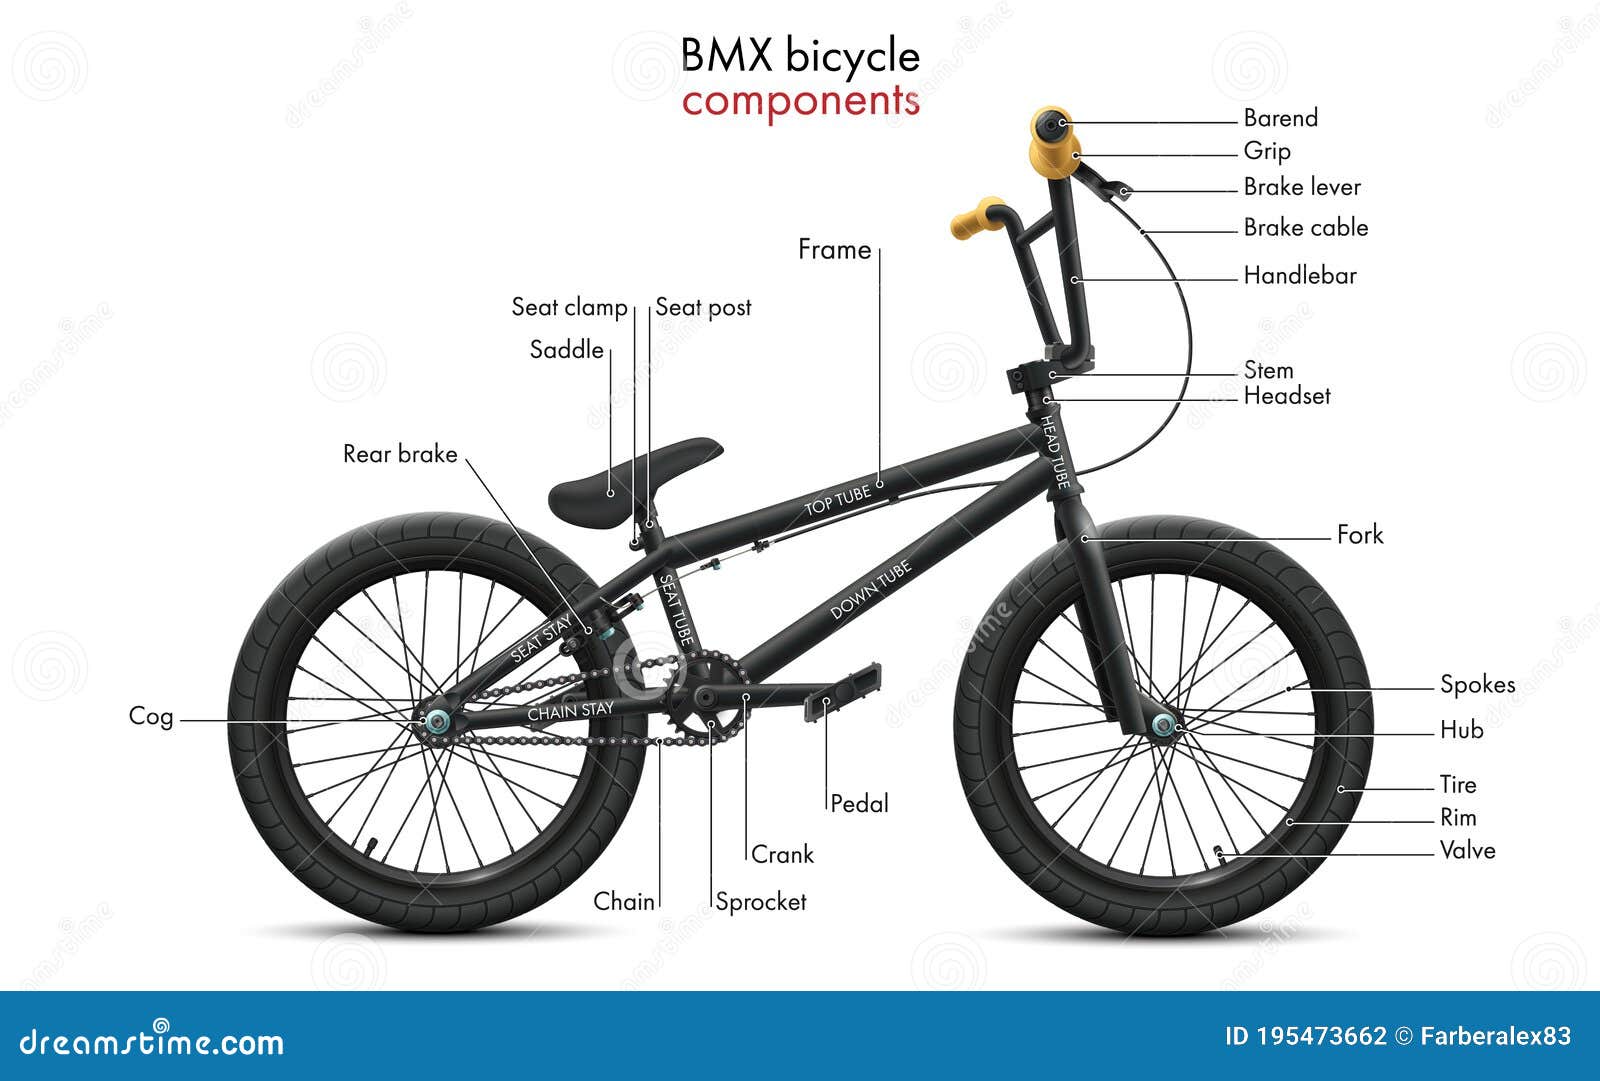 Komponenten Eines Fahrrad Bmx Und Seines